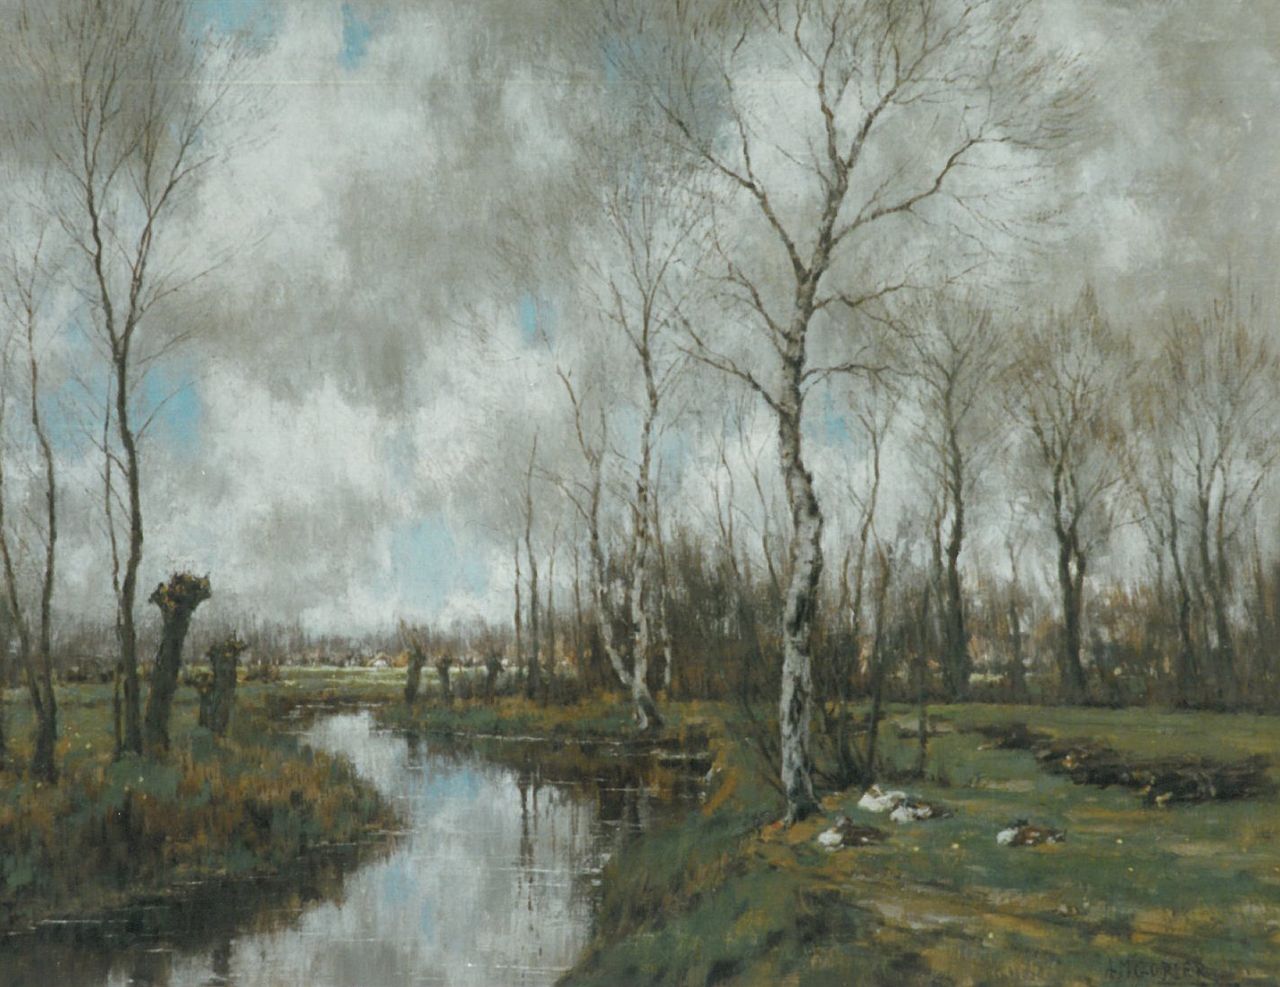 Gorter A.M.  | 'Arnold' Marc Gorter, Autumn landscape, the Vordense beek, Öl auf Leinwand 62,0 x 79,0 cm, signed l.r. und dated 1925